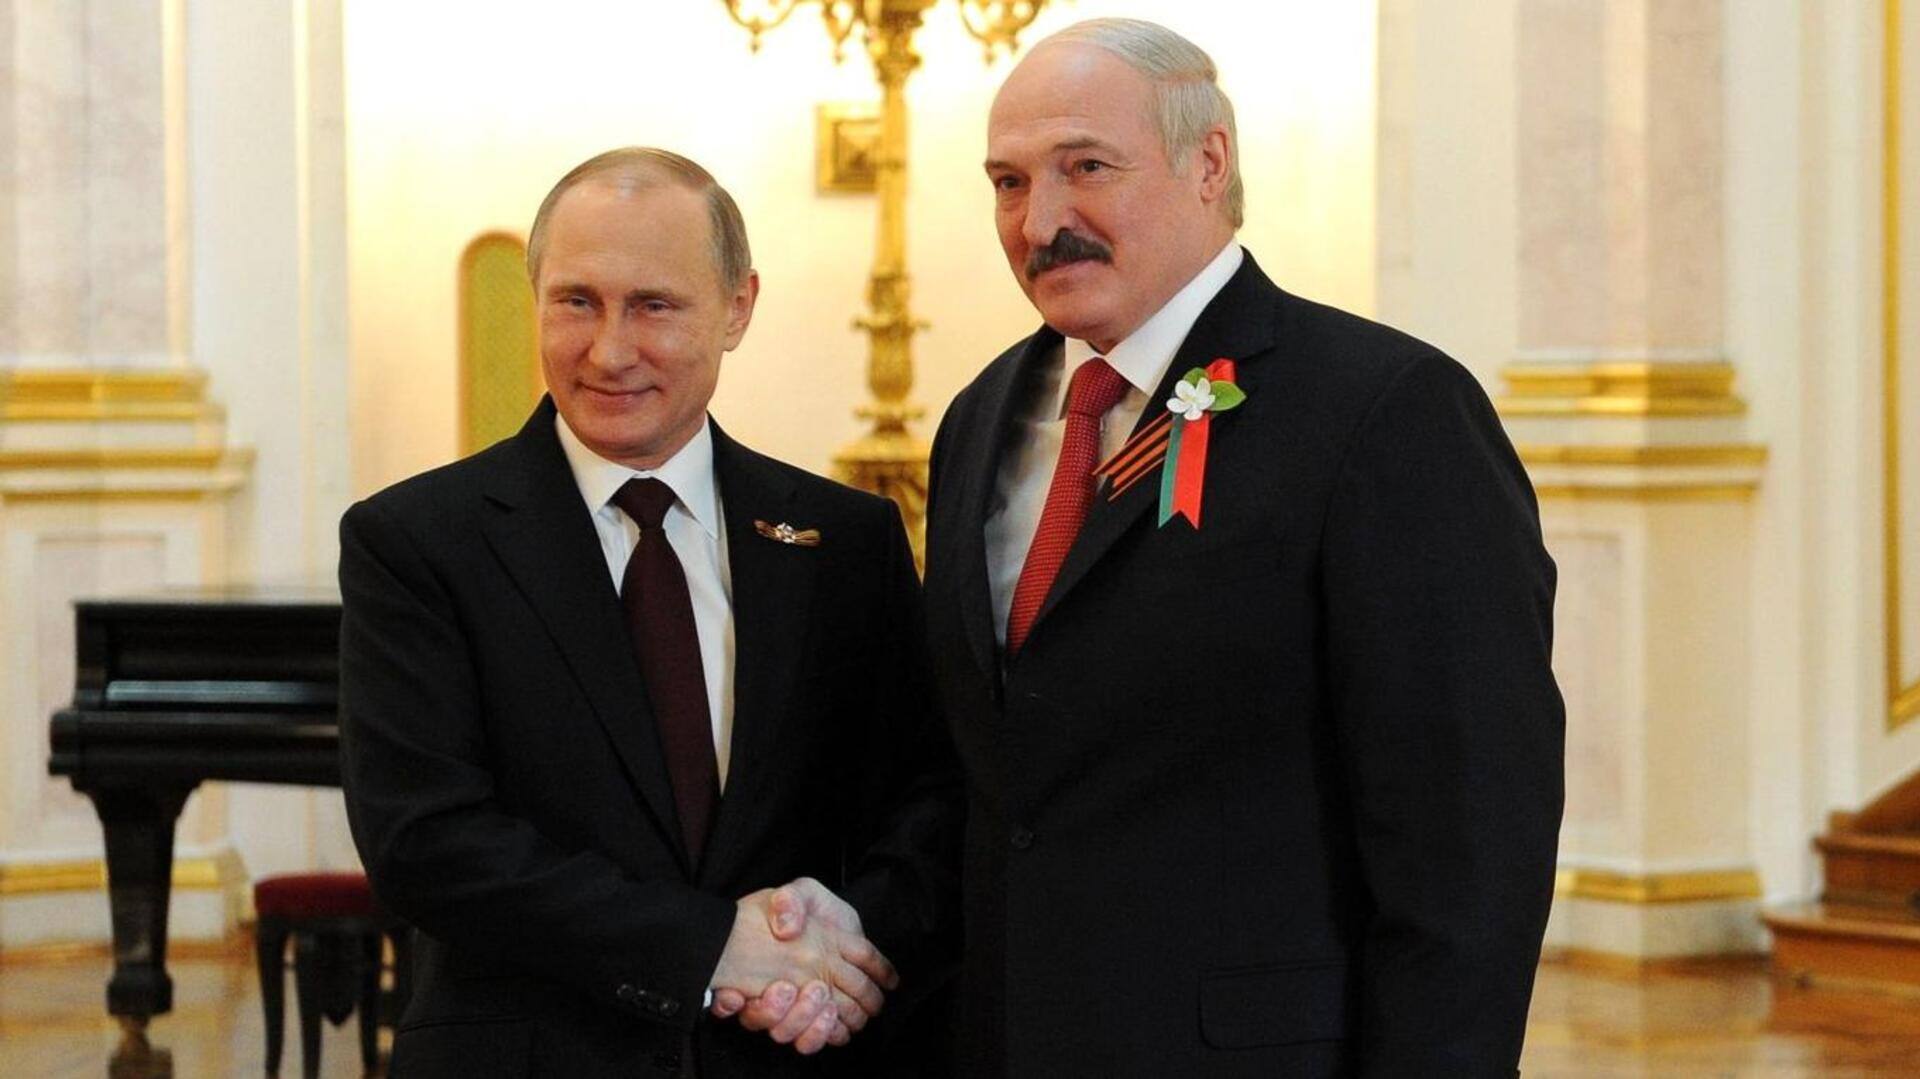 पुतिन से मुलाकात के बाद बेलारूस के राष्ट्रपति अस्पताल में भर्ती, जहर देने का शक